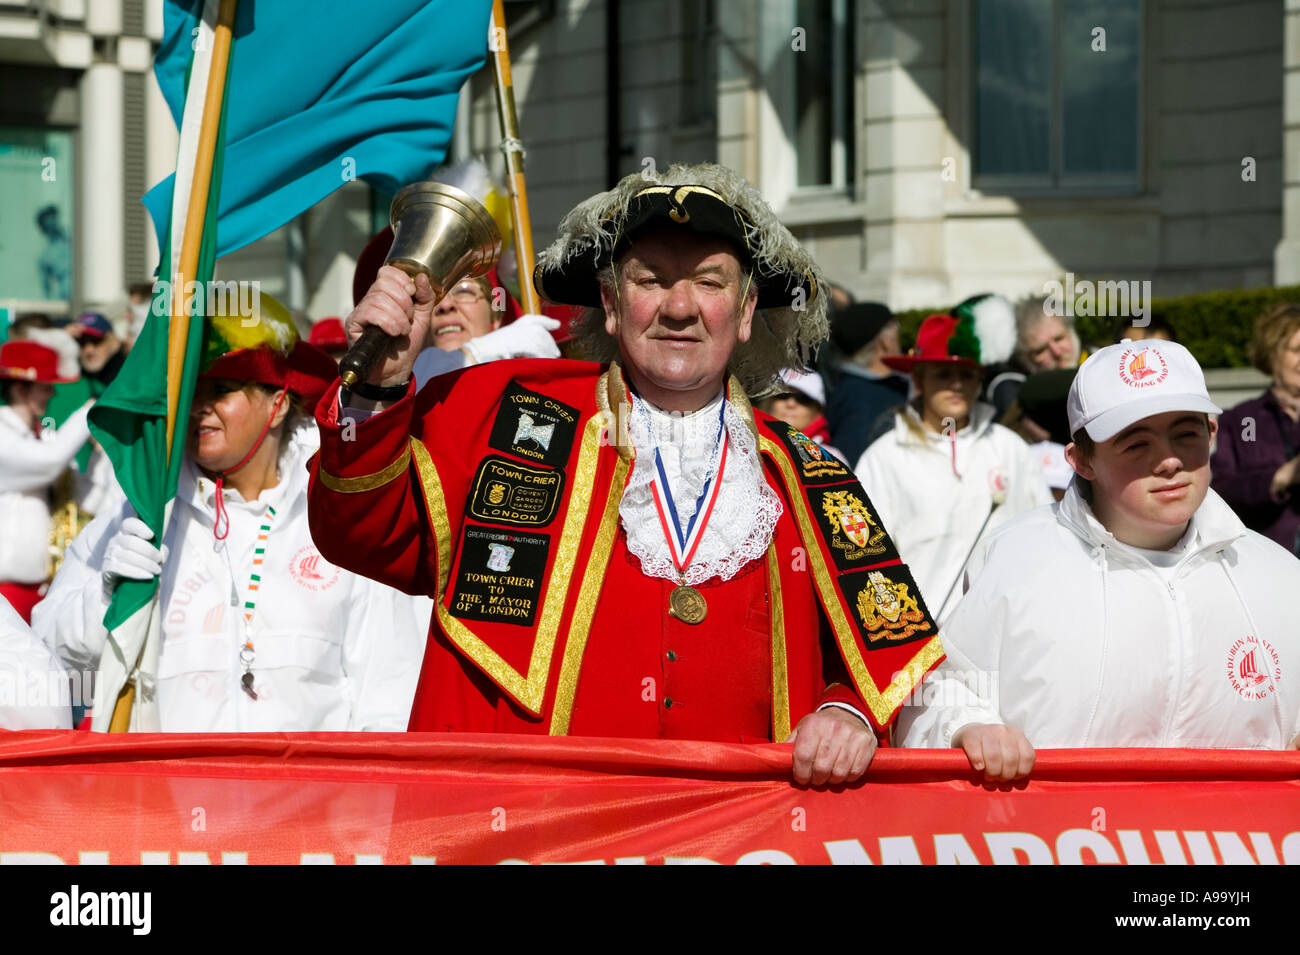 London's Town Crier Peter Moore à la fête de la St Patrick à Londres Banque D'Images